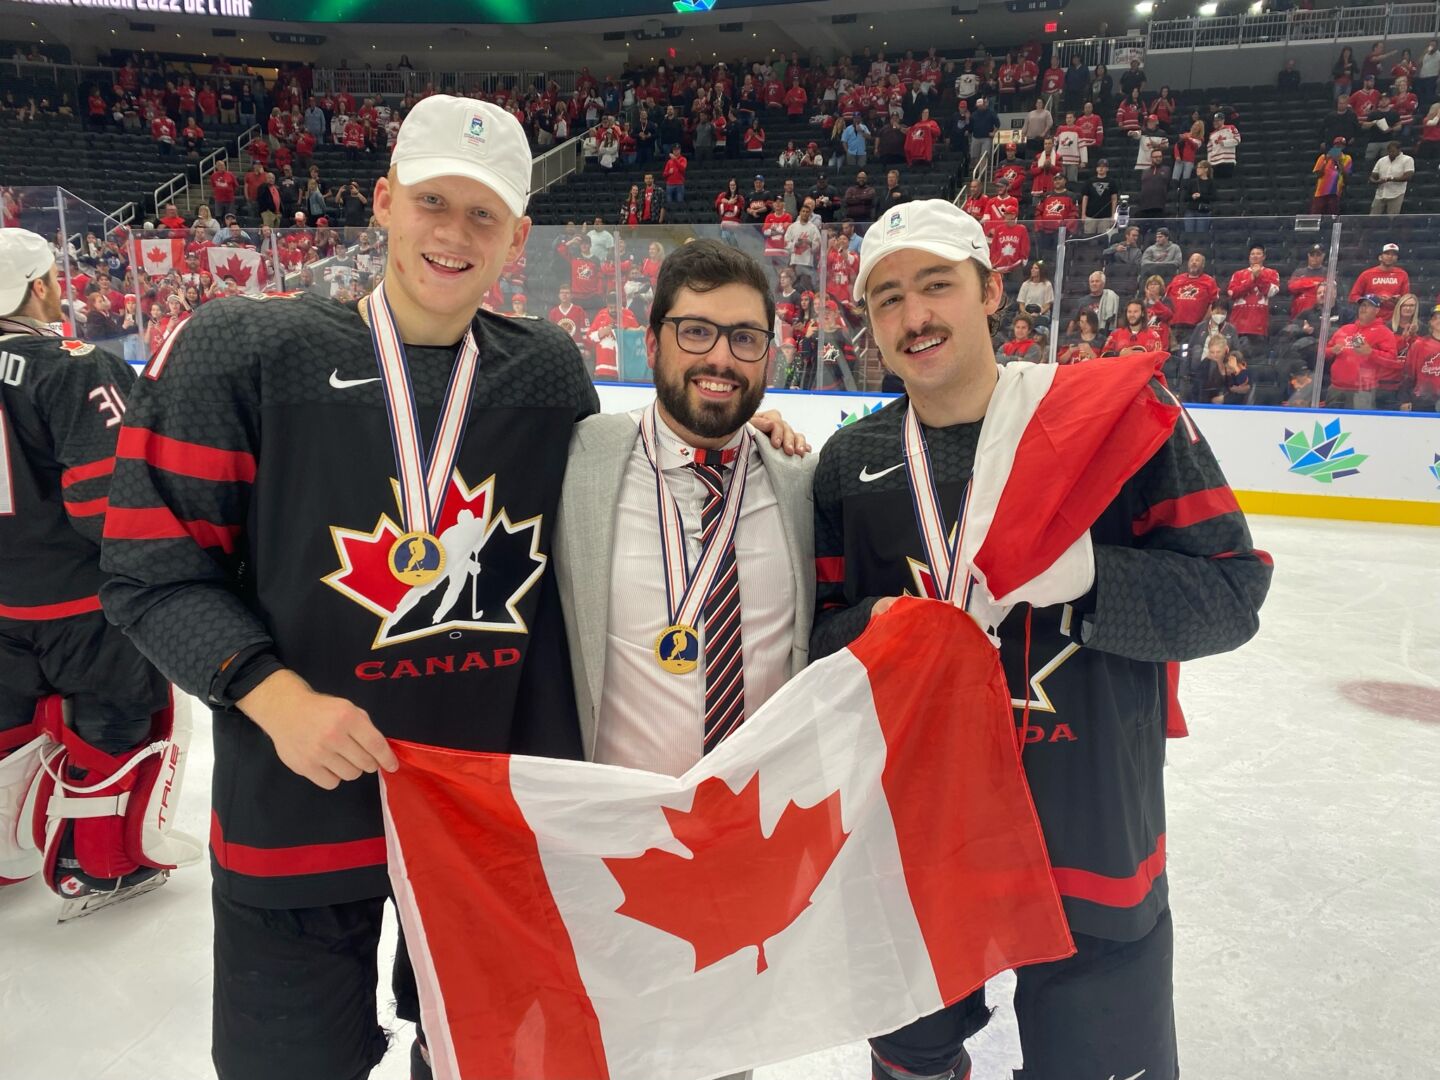 Elliot Desnoyers (à droite) a remporté la médaille d’or du Championnat du monde de hockey junior avec Équipe Canada en compagnie d’un autre ancien joueur des Gaulois, l’attaquant Nathan Gaucher (à gauche), et de l’entraîneur des gardiens de but de la formation maskoutaine M18 AAA, Olivier Michaud (au centre). Photo Facebook Gaulois de Saint-Hyacinthe M18 AAA